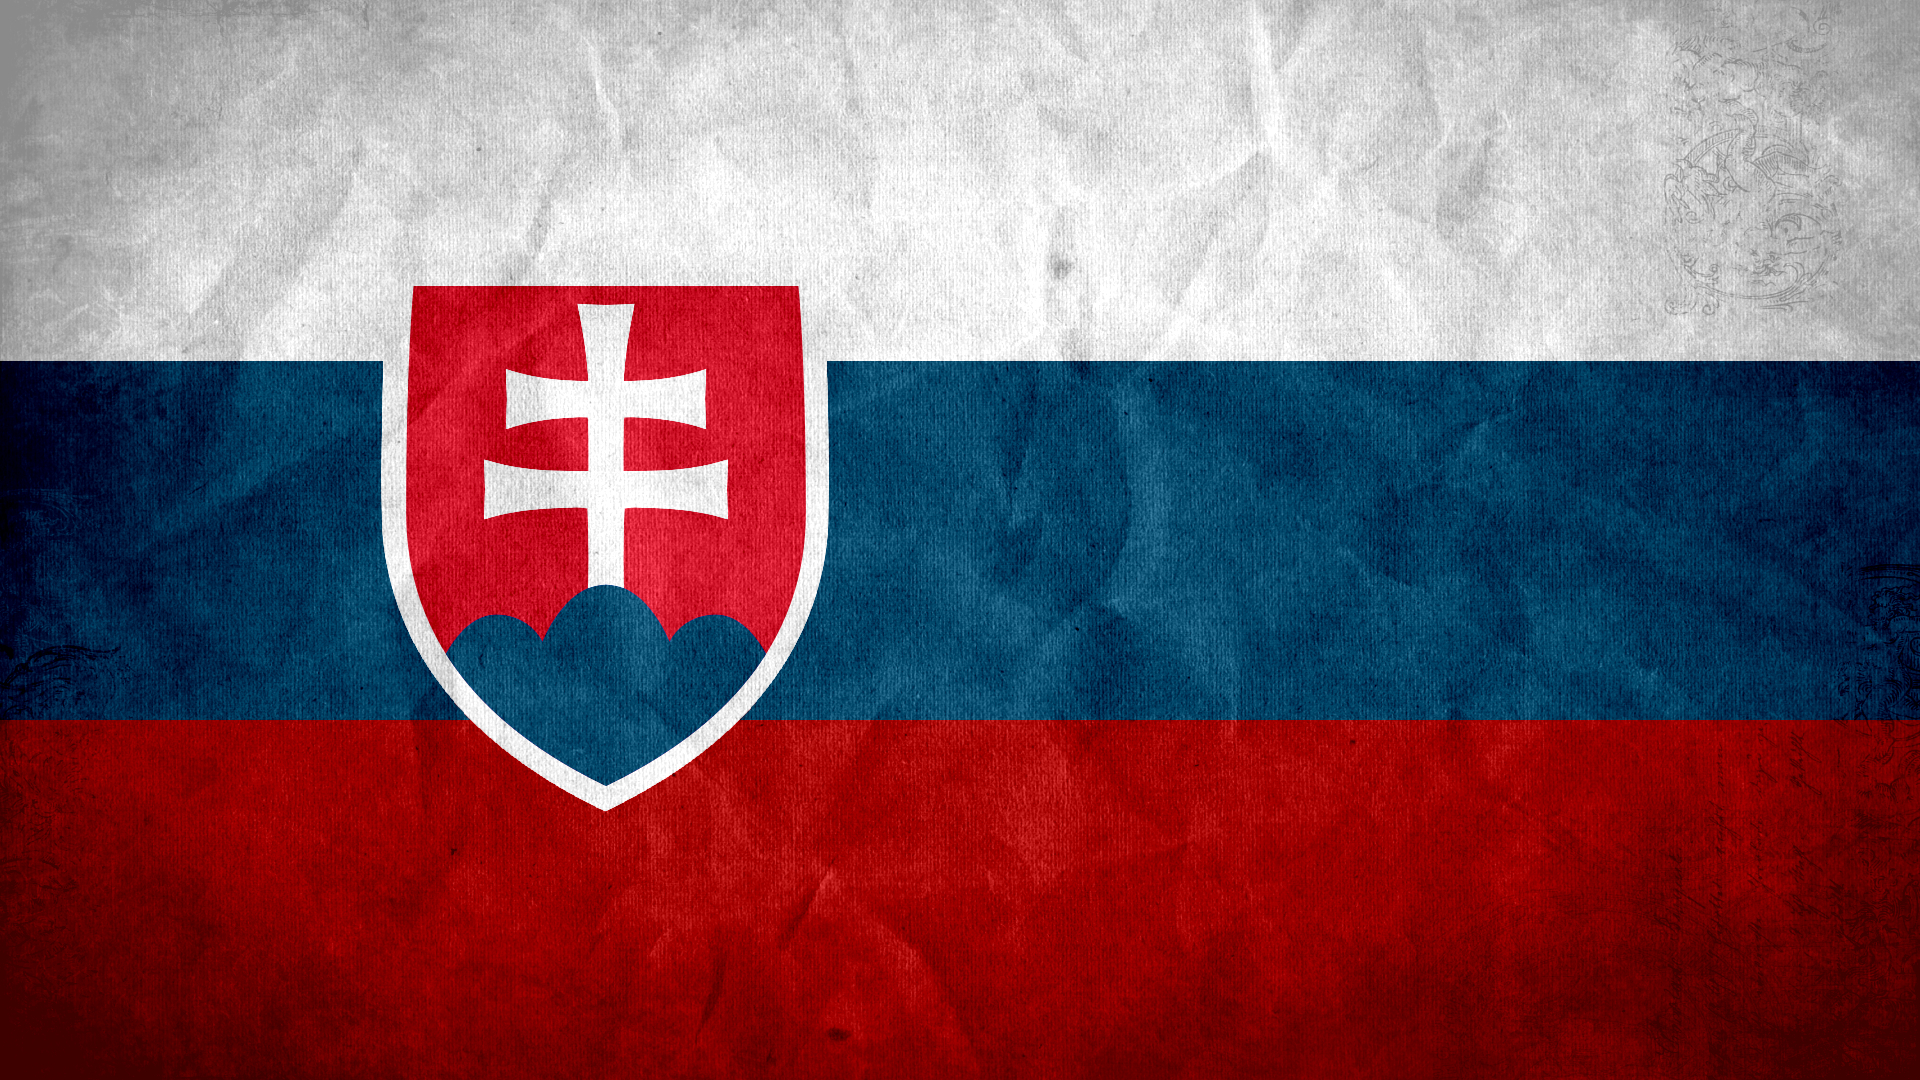 Скачать обои Флаг Словакии на телефон бесплатно